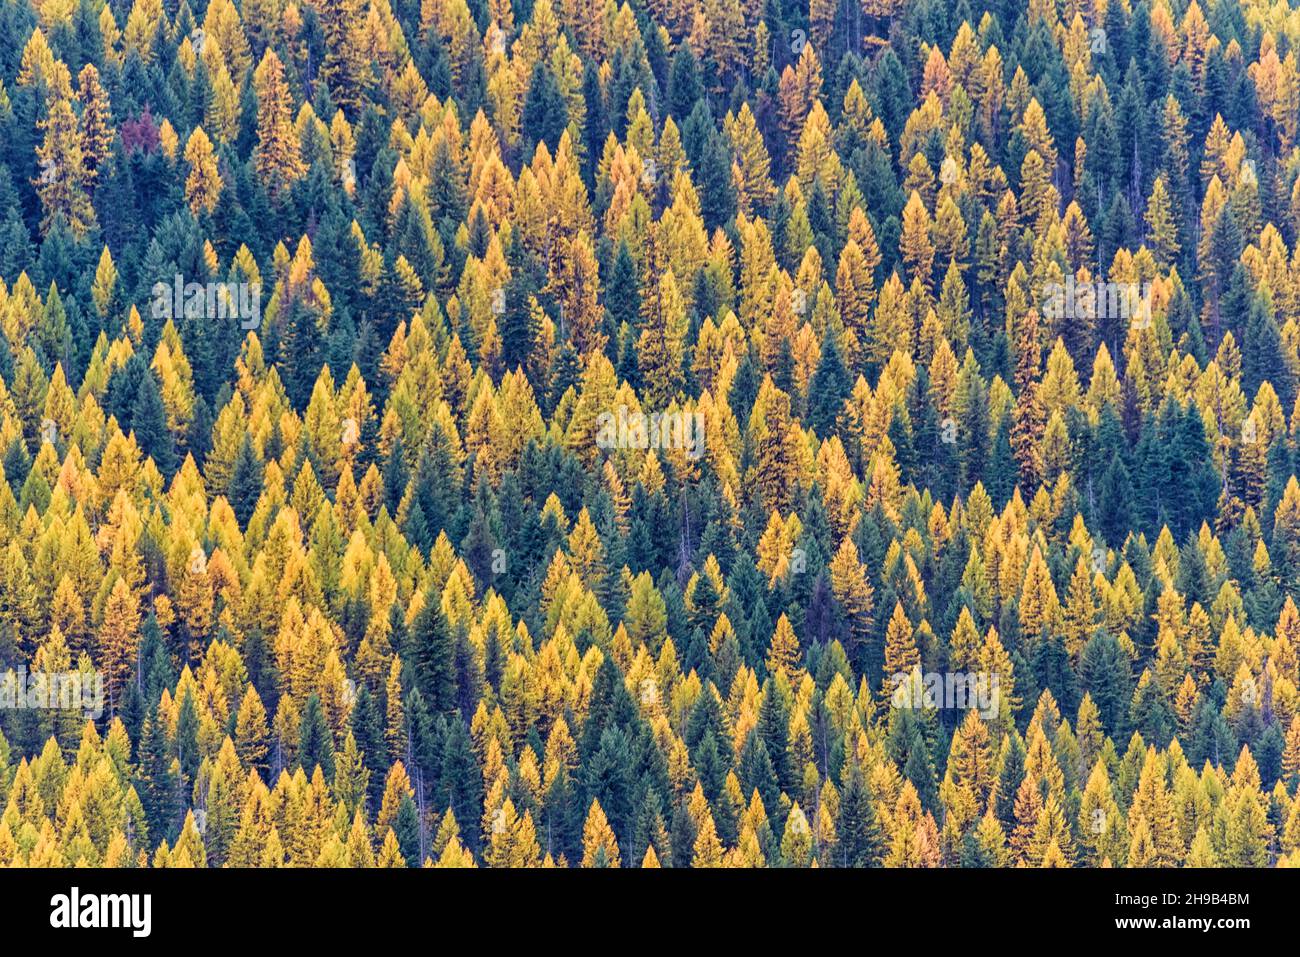 Autumn foliage in the mountain, Montana State, USA Stock Photo